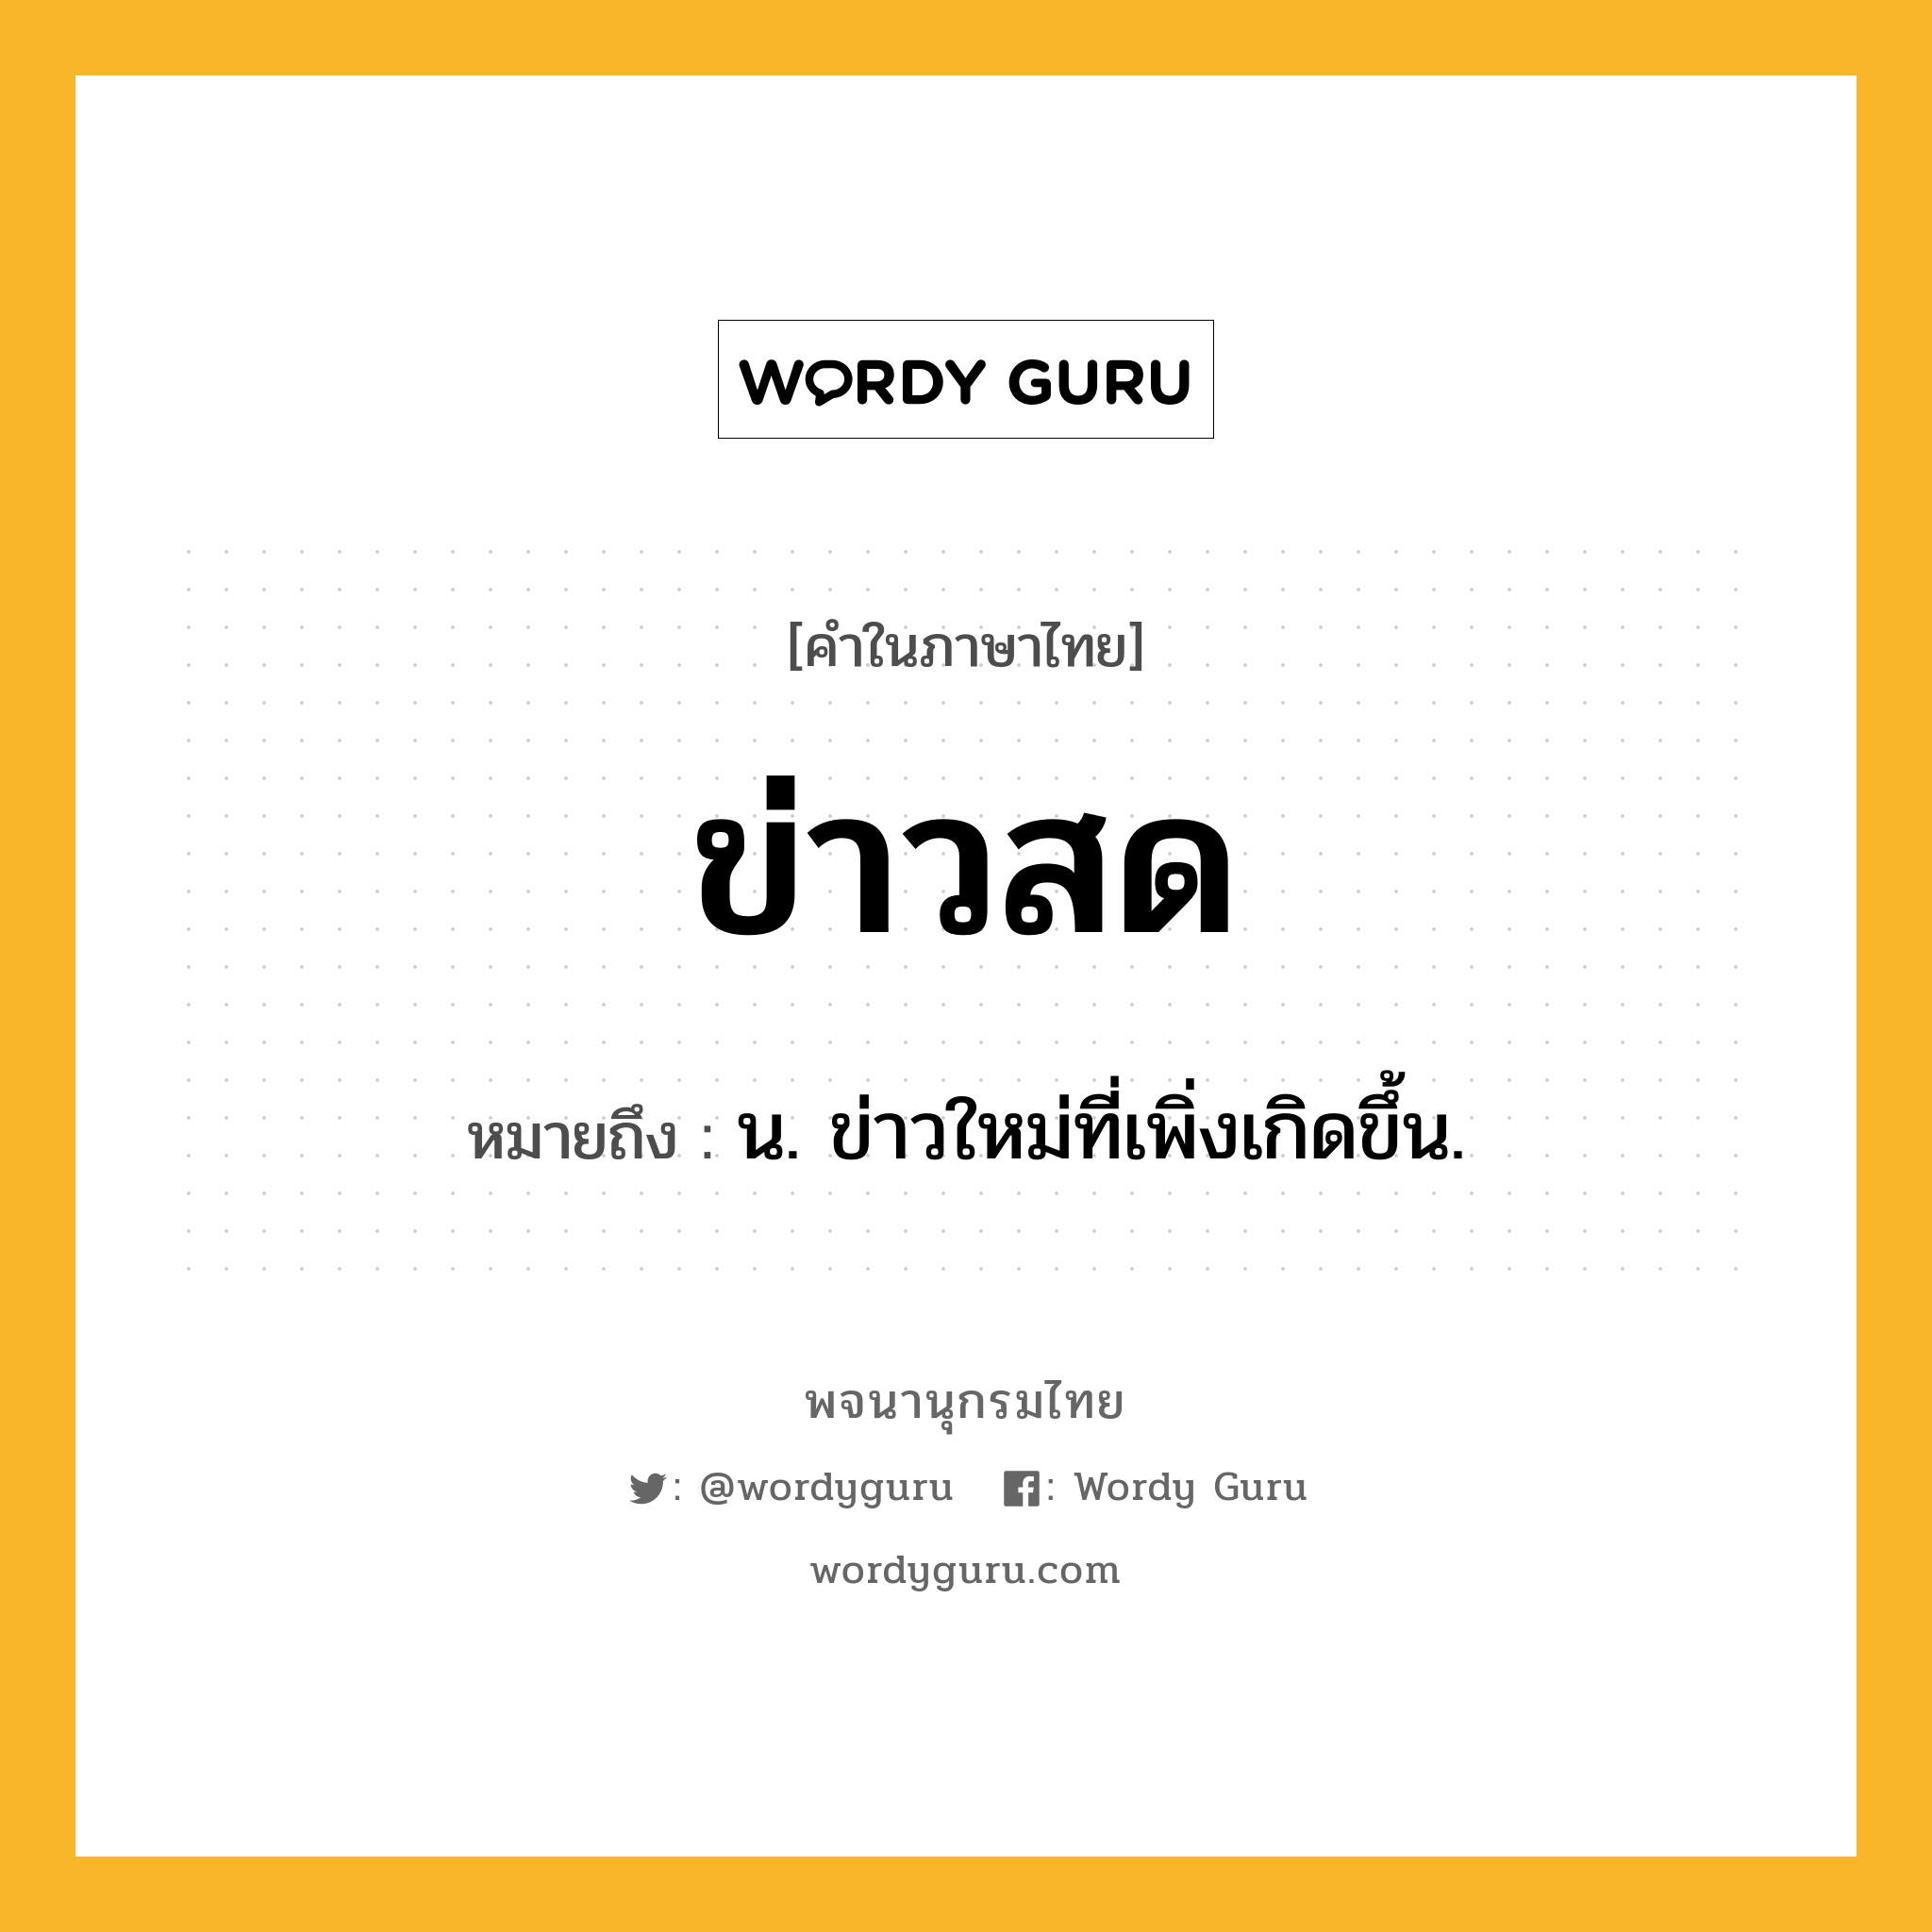 ข่าวสด หมายถึงอะไร?, คำในภาษาไทย ข่าวสด หมายถึง น. ข่าวใหม่ที่เพิ่งเกิดขึ้น.